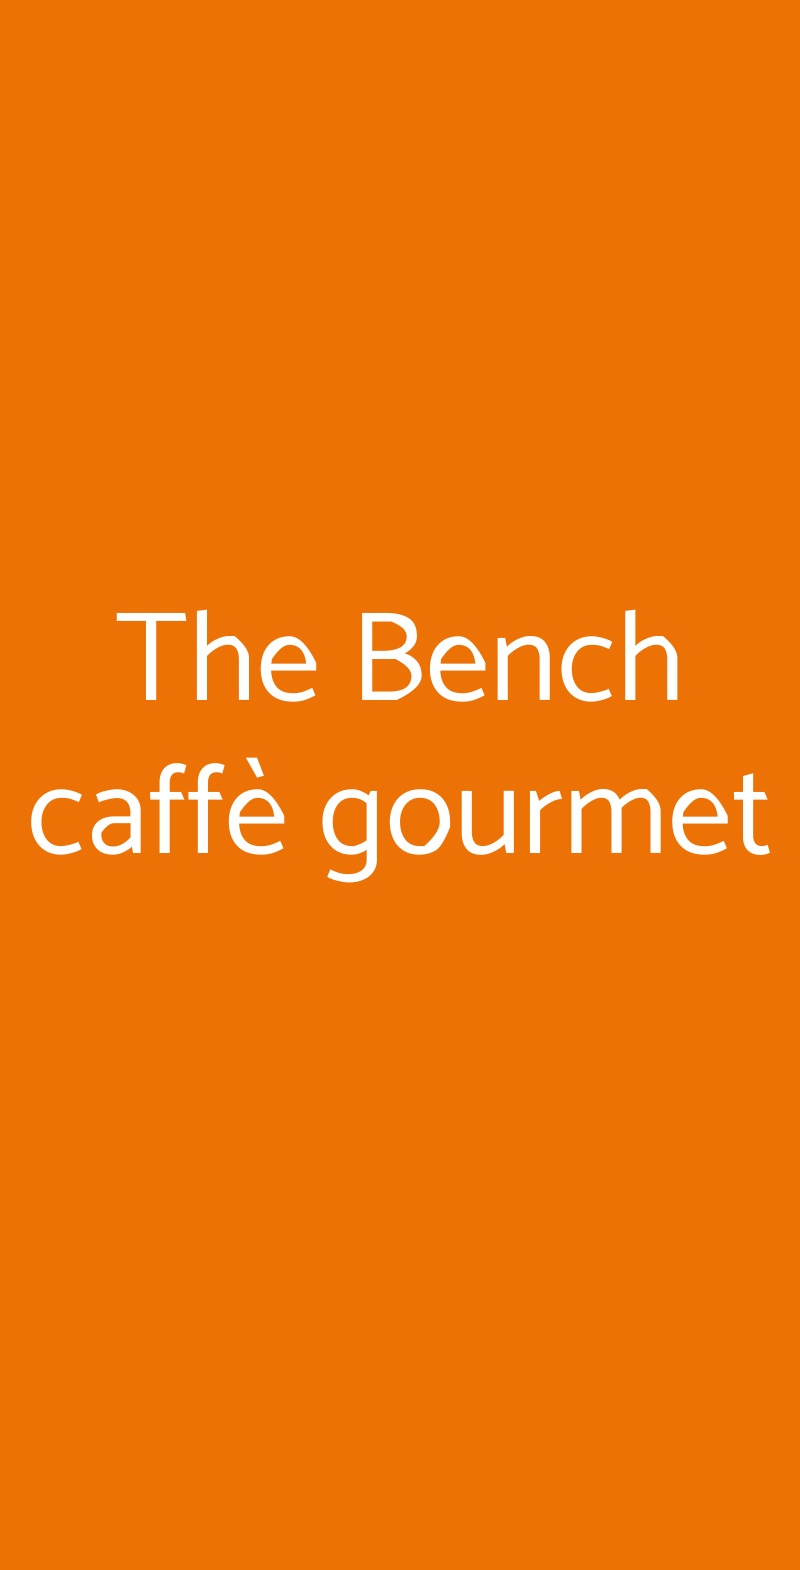 The Bench caffè gourmet Firenze menù 1 pagina